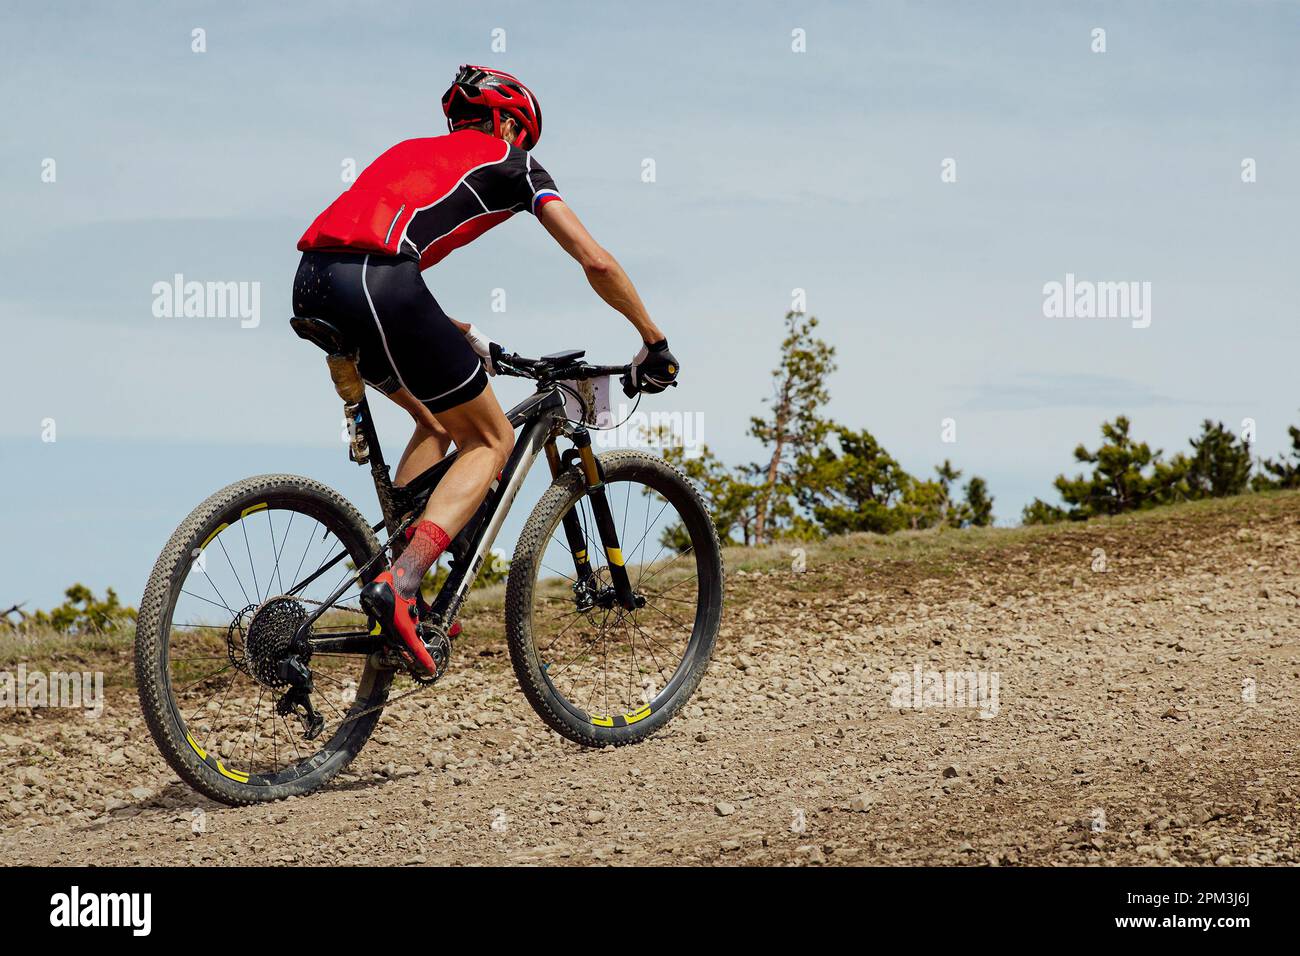 cyclisme de fond, cycliste athlète en montagne sur route de gravier Banque D'Images